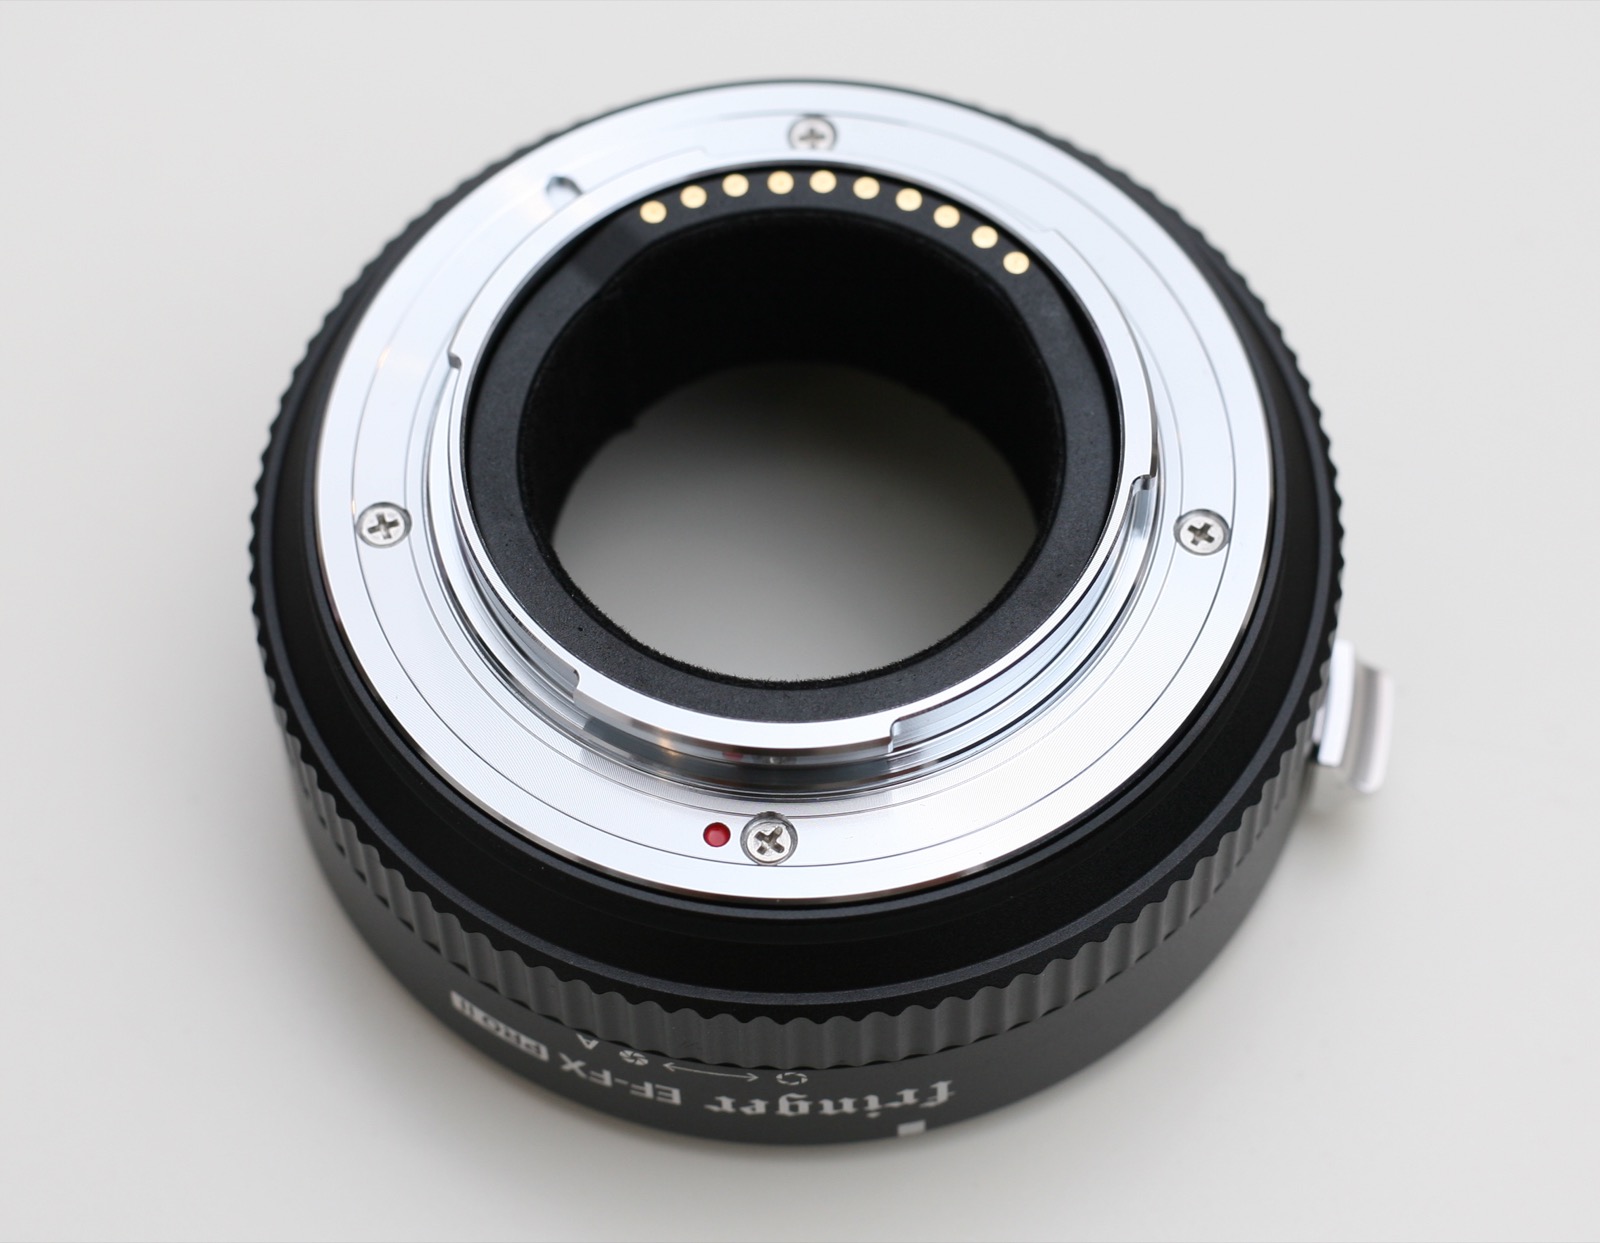 FUJIFILMのミラーレスカメラにCanonのEFマウントのレンズを装着できるマウントアダプター「Fringer FR-FX2」を購入しました。  Estudio personal